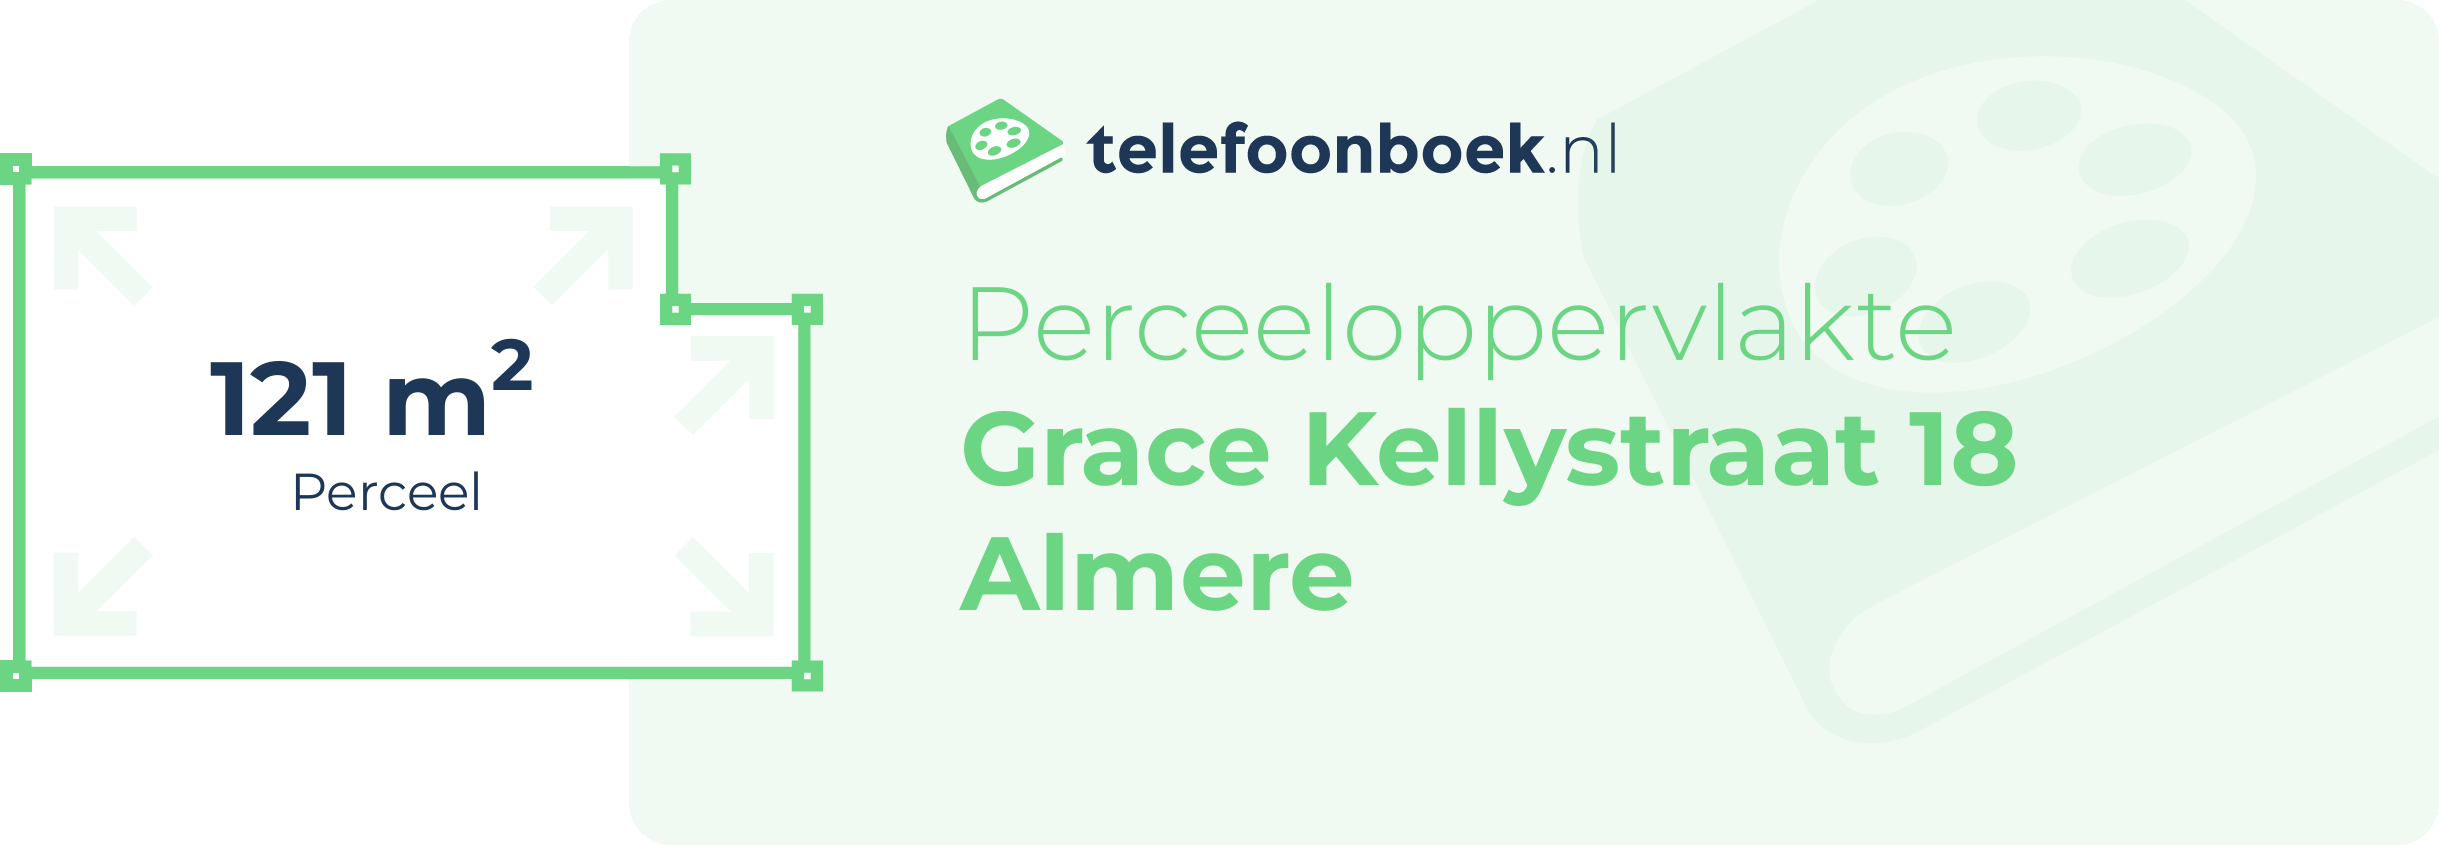 Perceeloppervlakte Grace Kellystraat 18 Almere